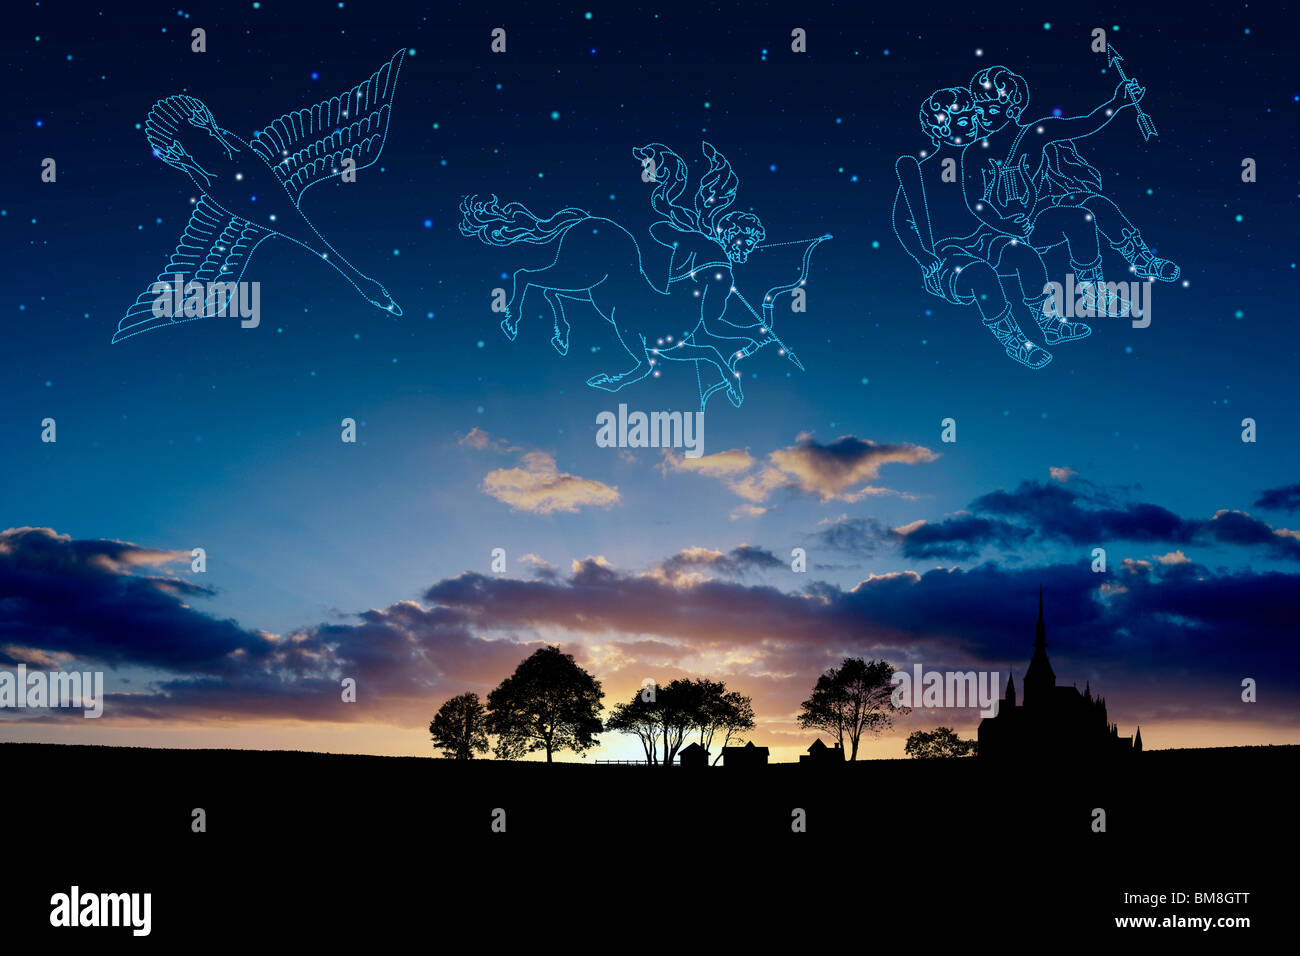 Bild der Astrologie Zeichen, (Cygnus, Schütze, Zwillinge) Stockfoto